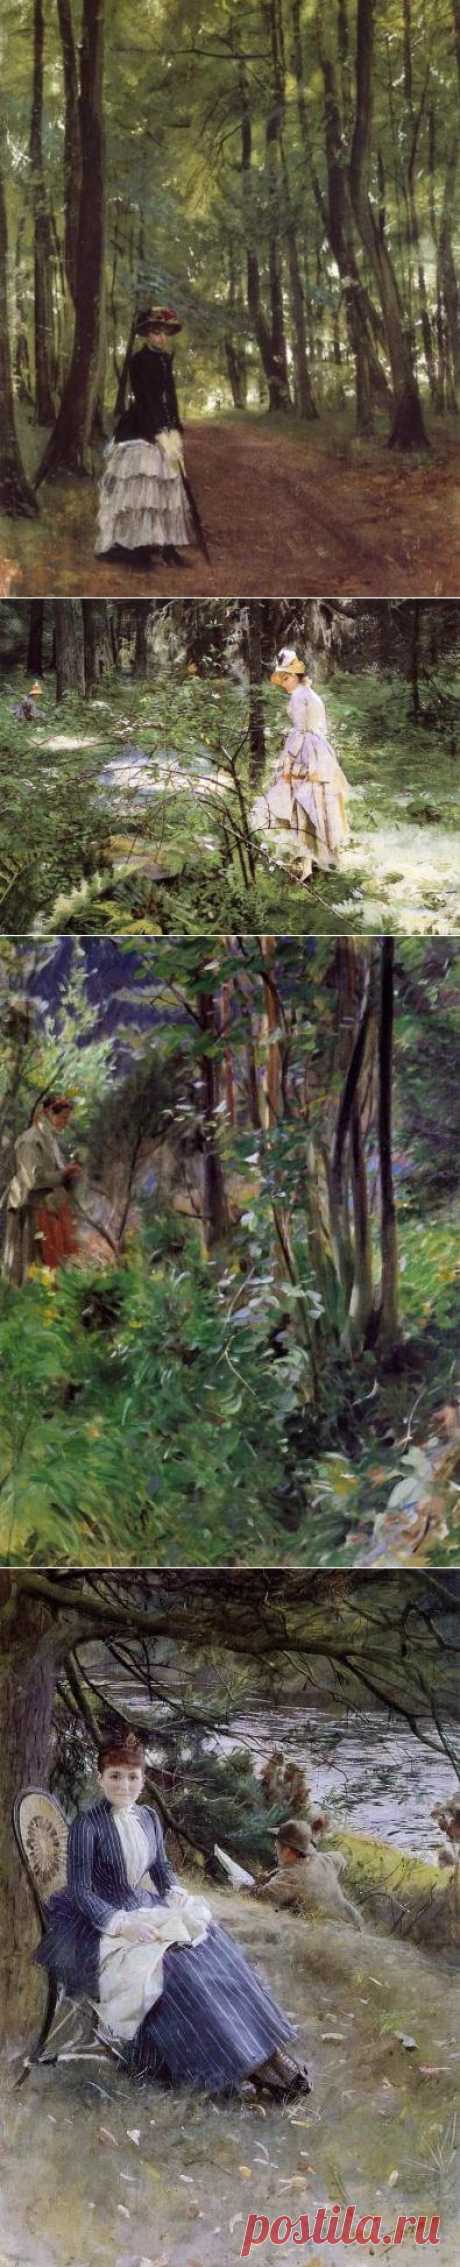 Природа, женщина и немного ню. Художник Anders Zorn / Андерс Цорн (1860-1920).